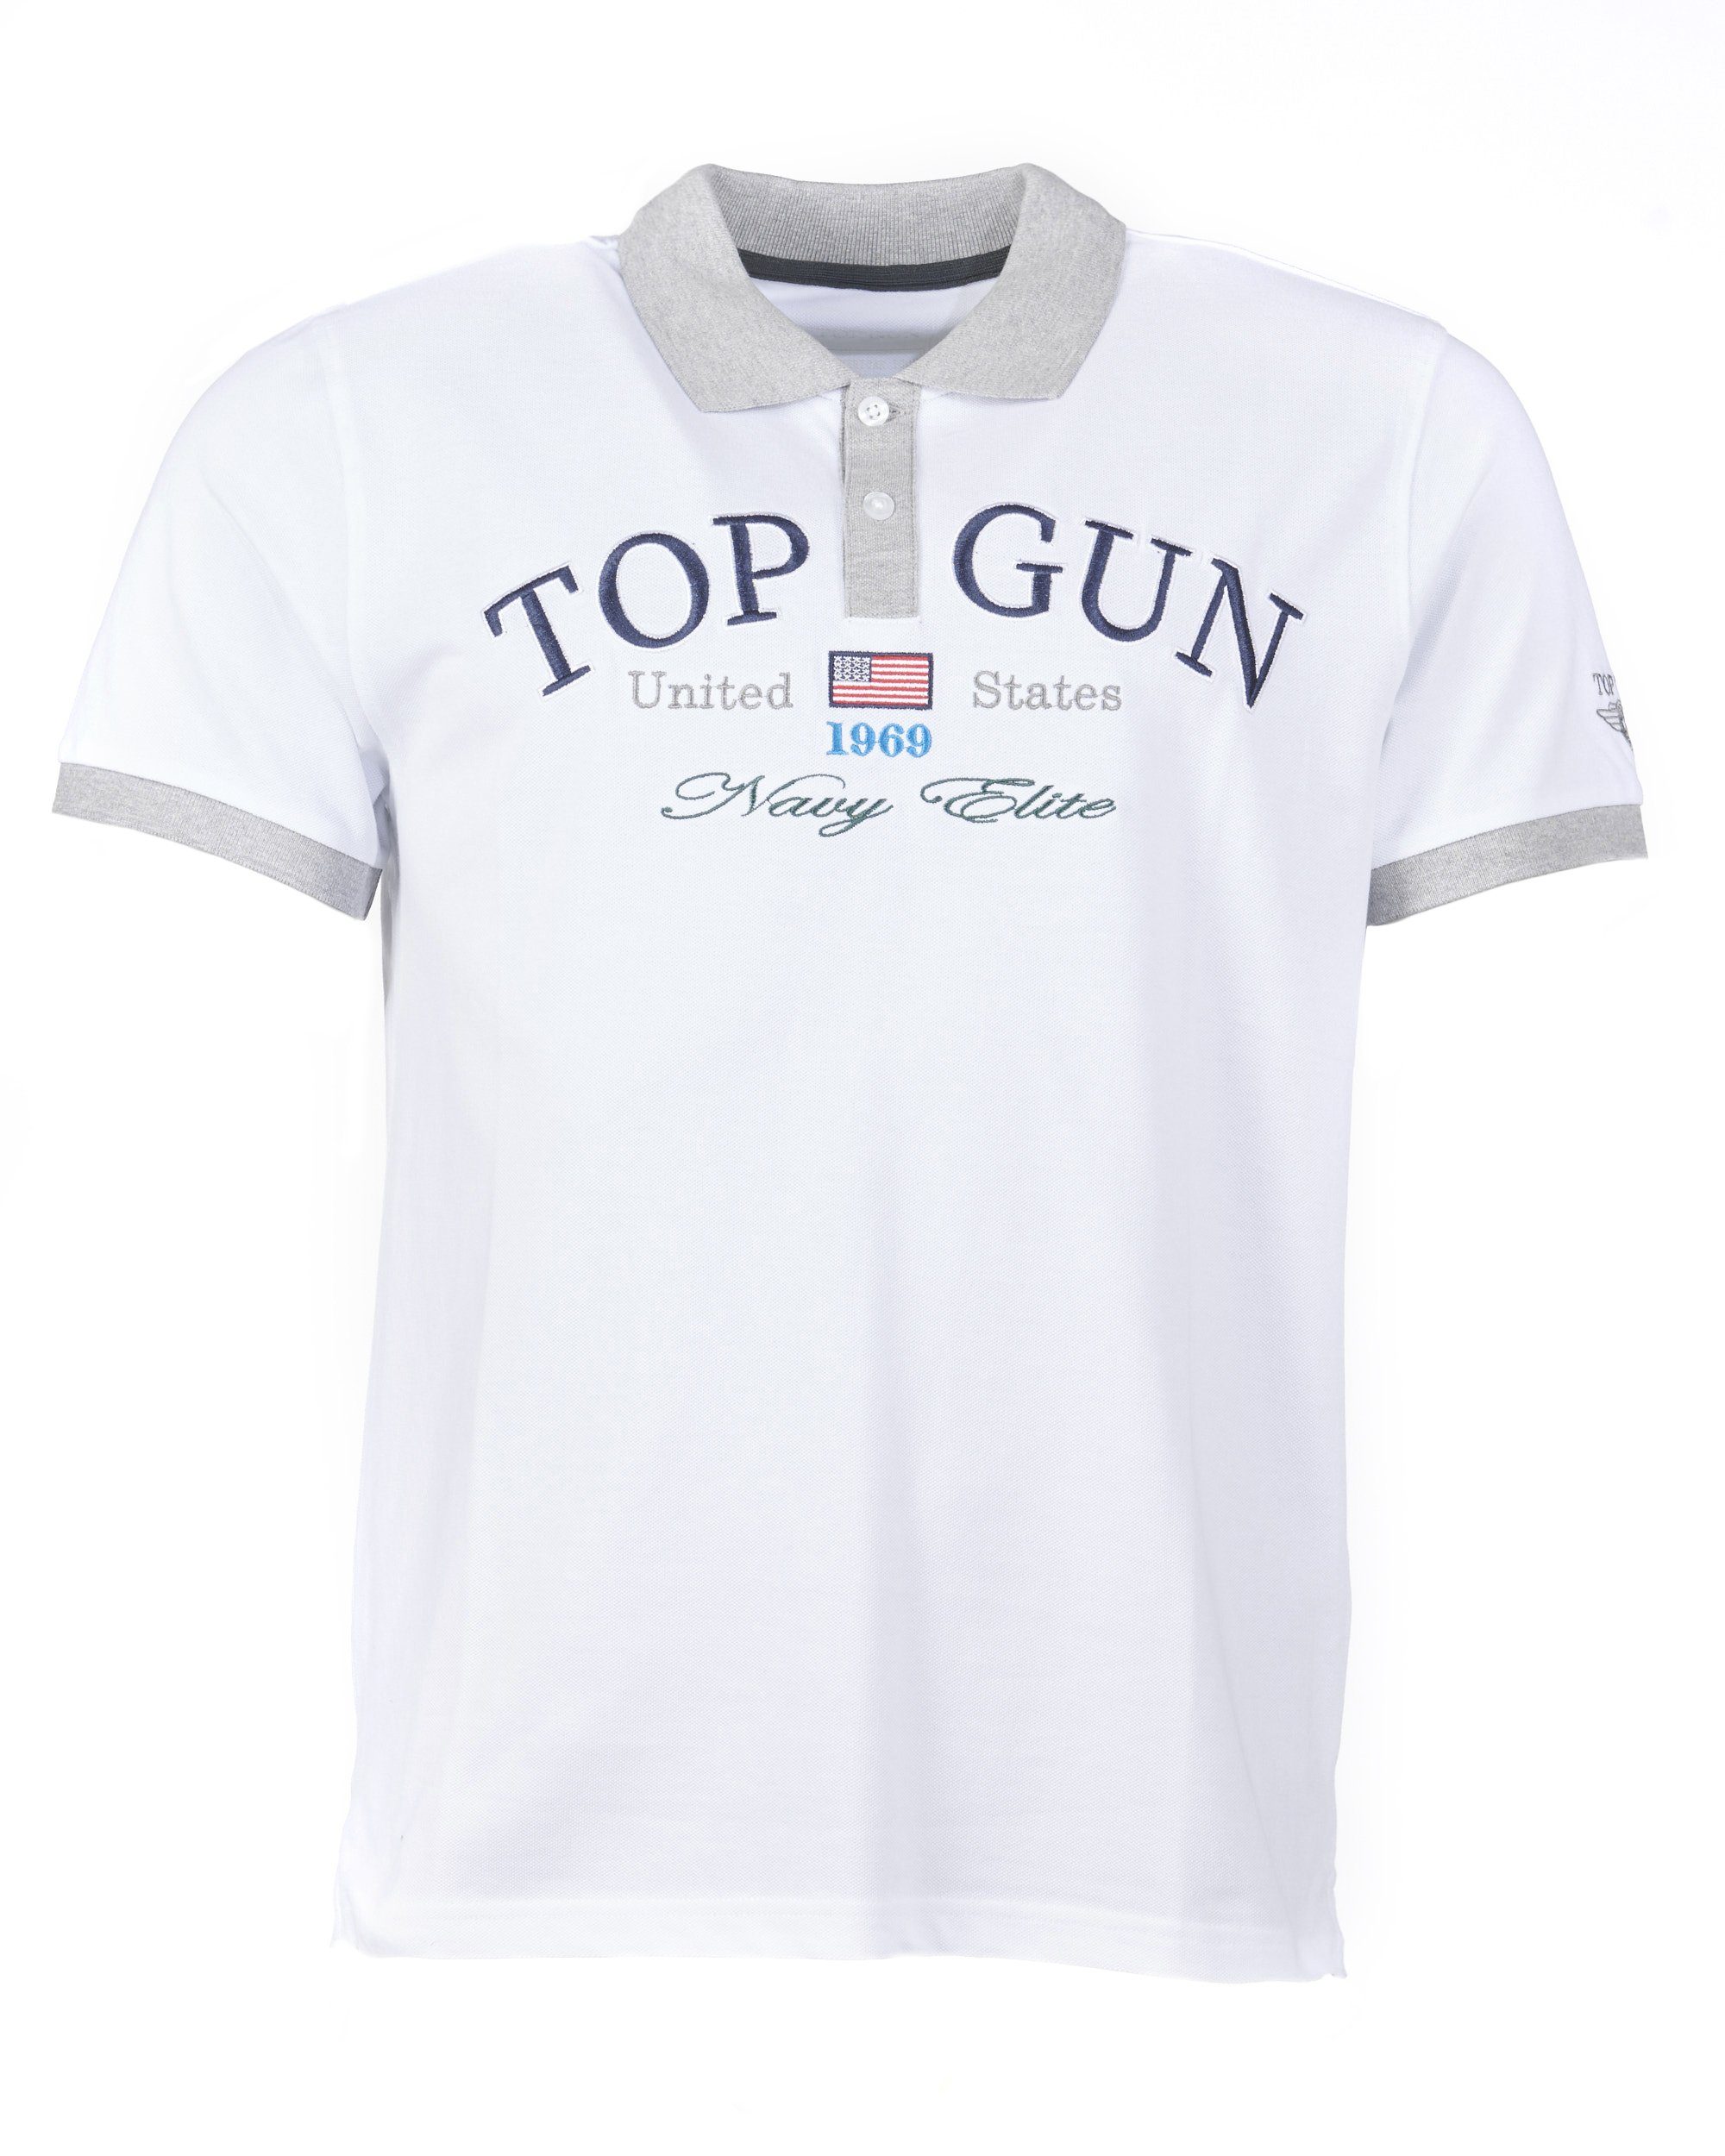 GUN TG20201020 TOP T-Shirt